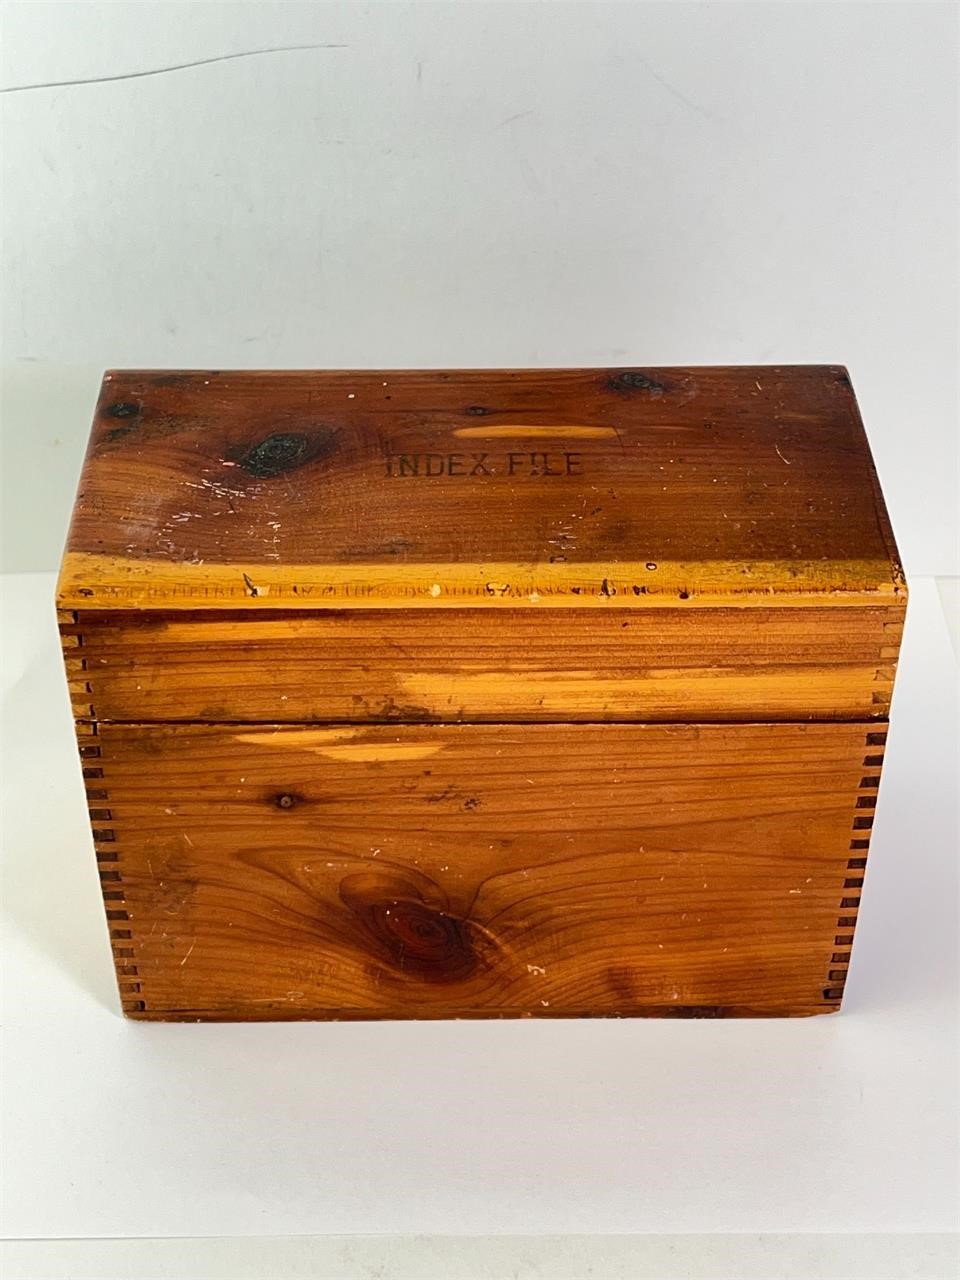 Vintage Wood Index File Box